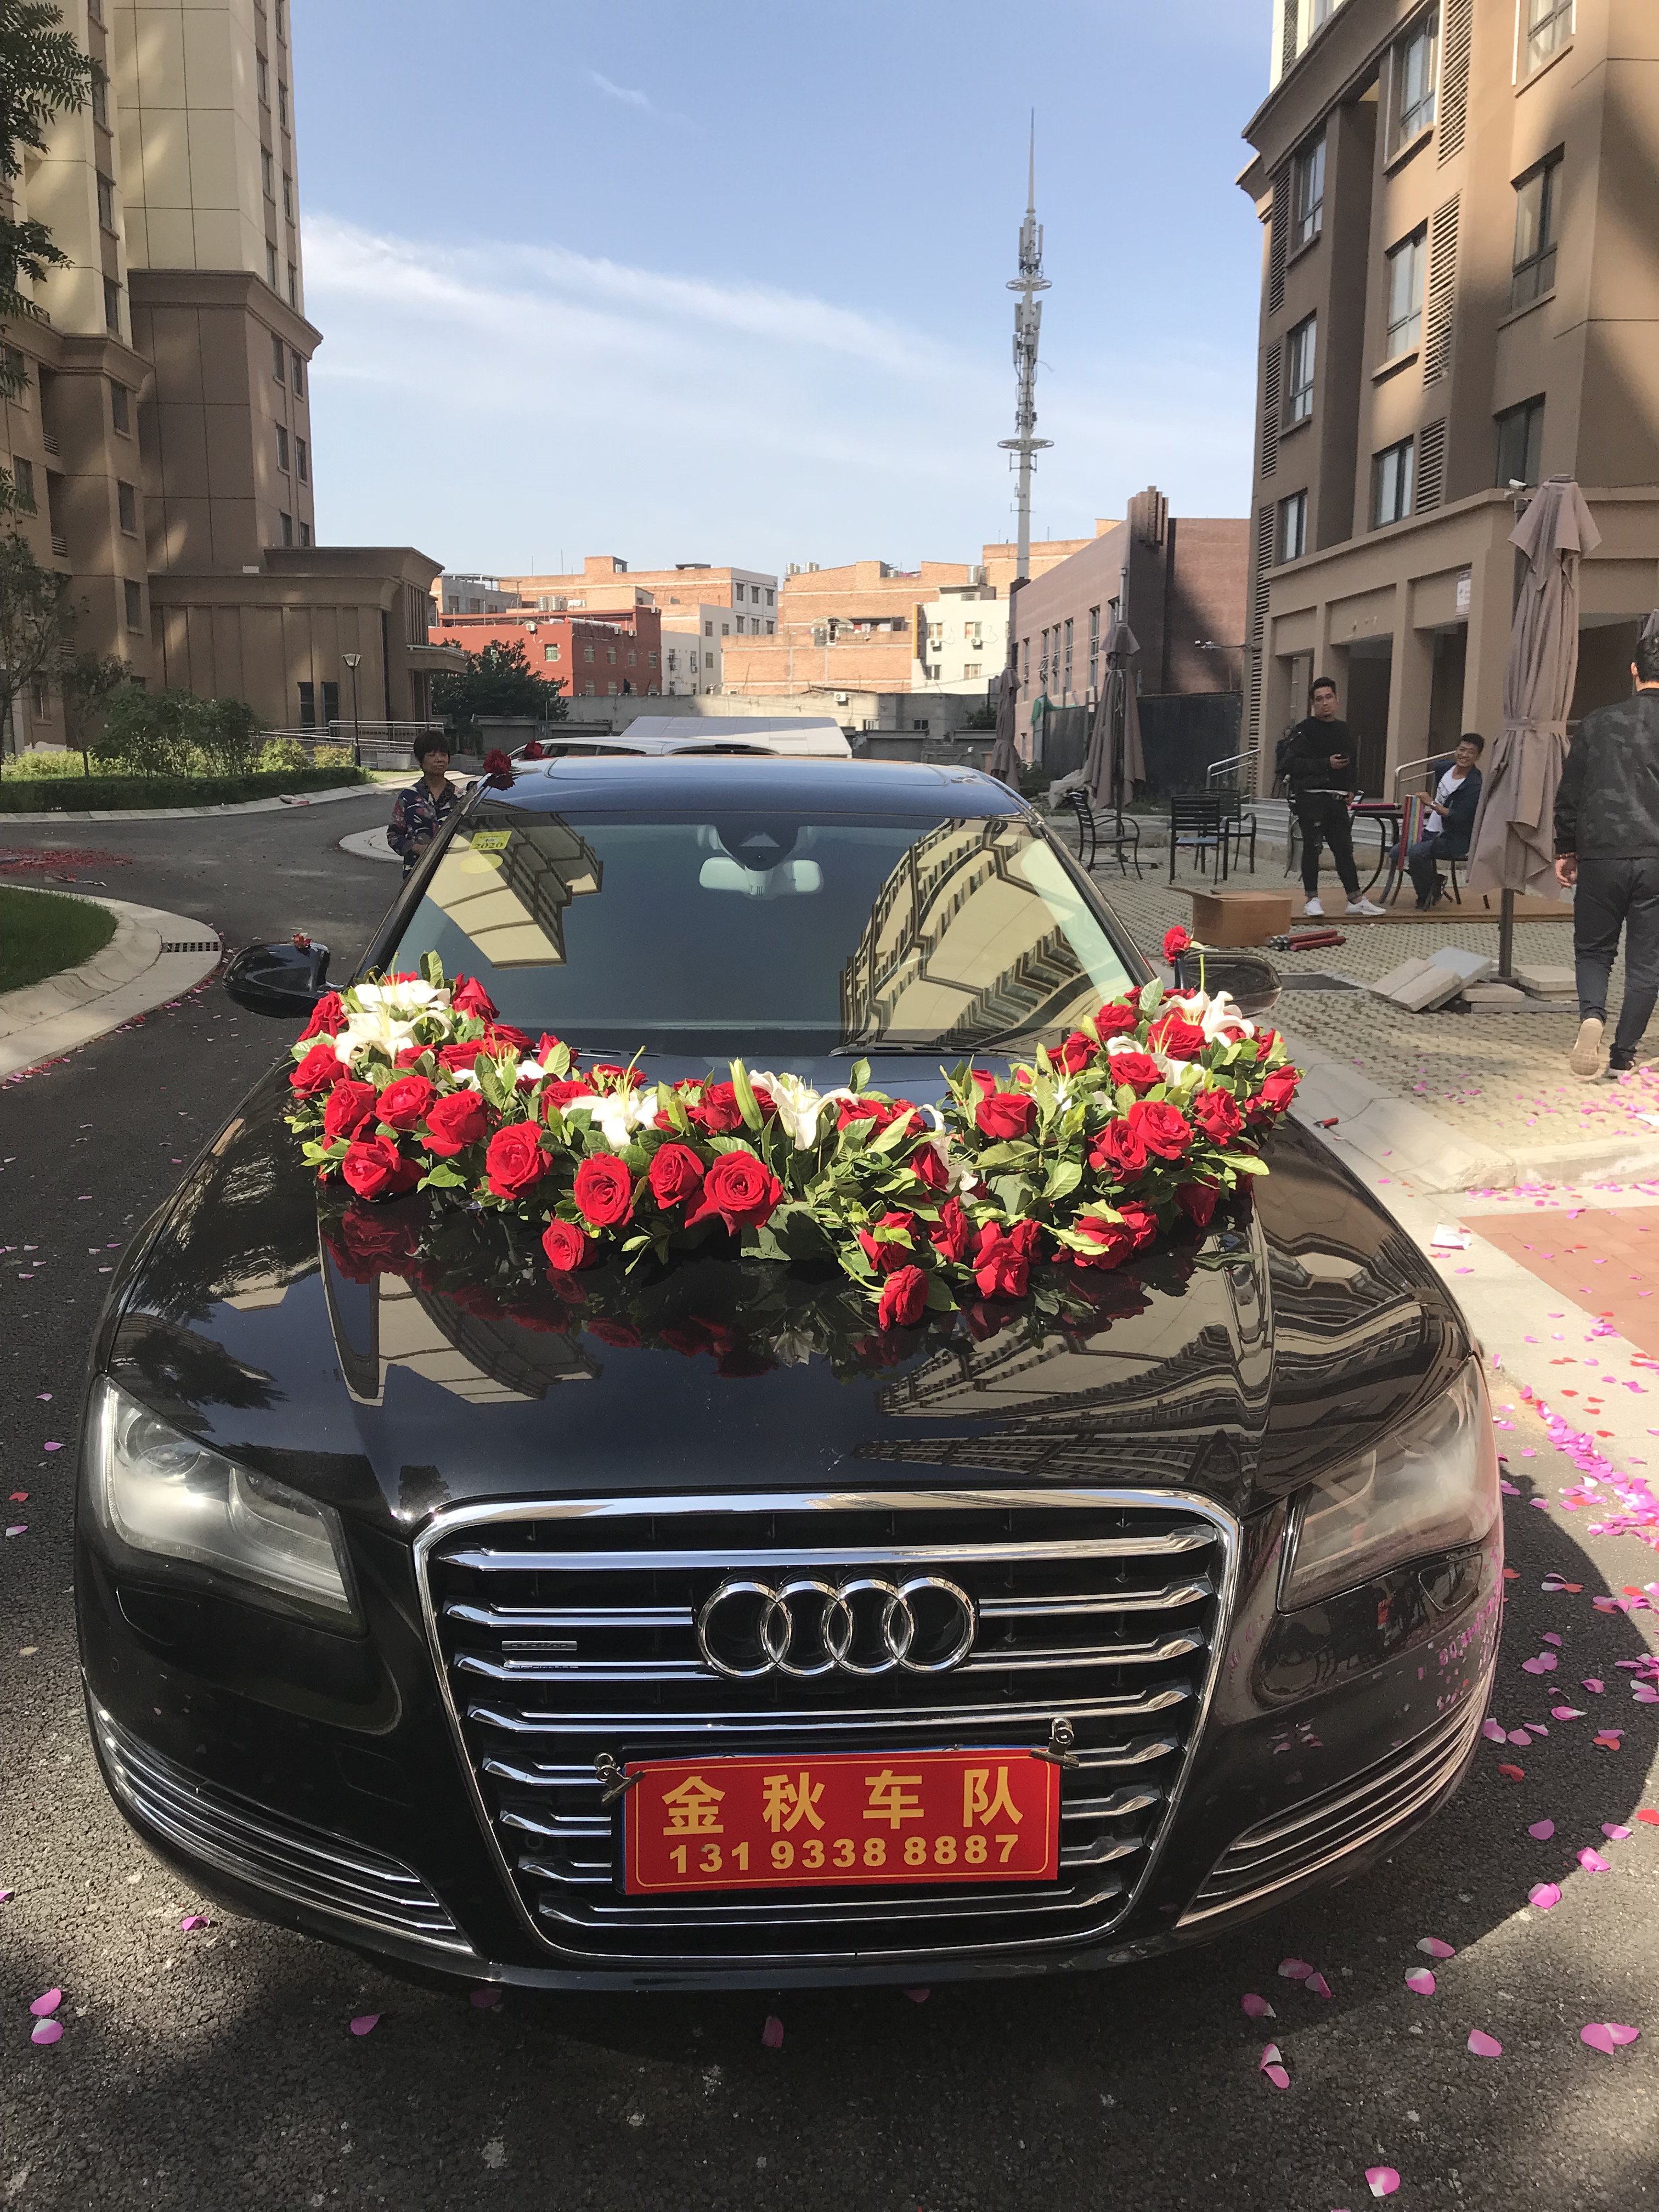 親，你家的車國慶節有沒有被借去當婚車呢？據說西安國慶節婚車很緊張 科技 第7張